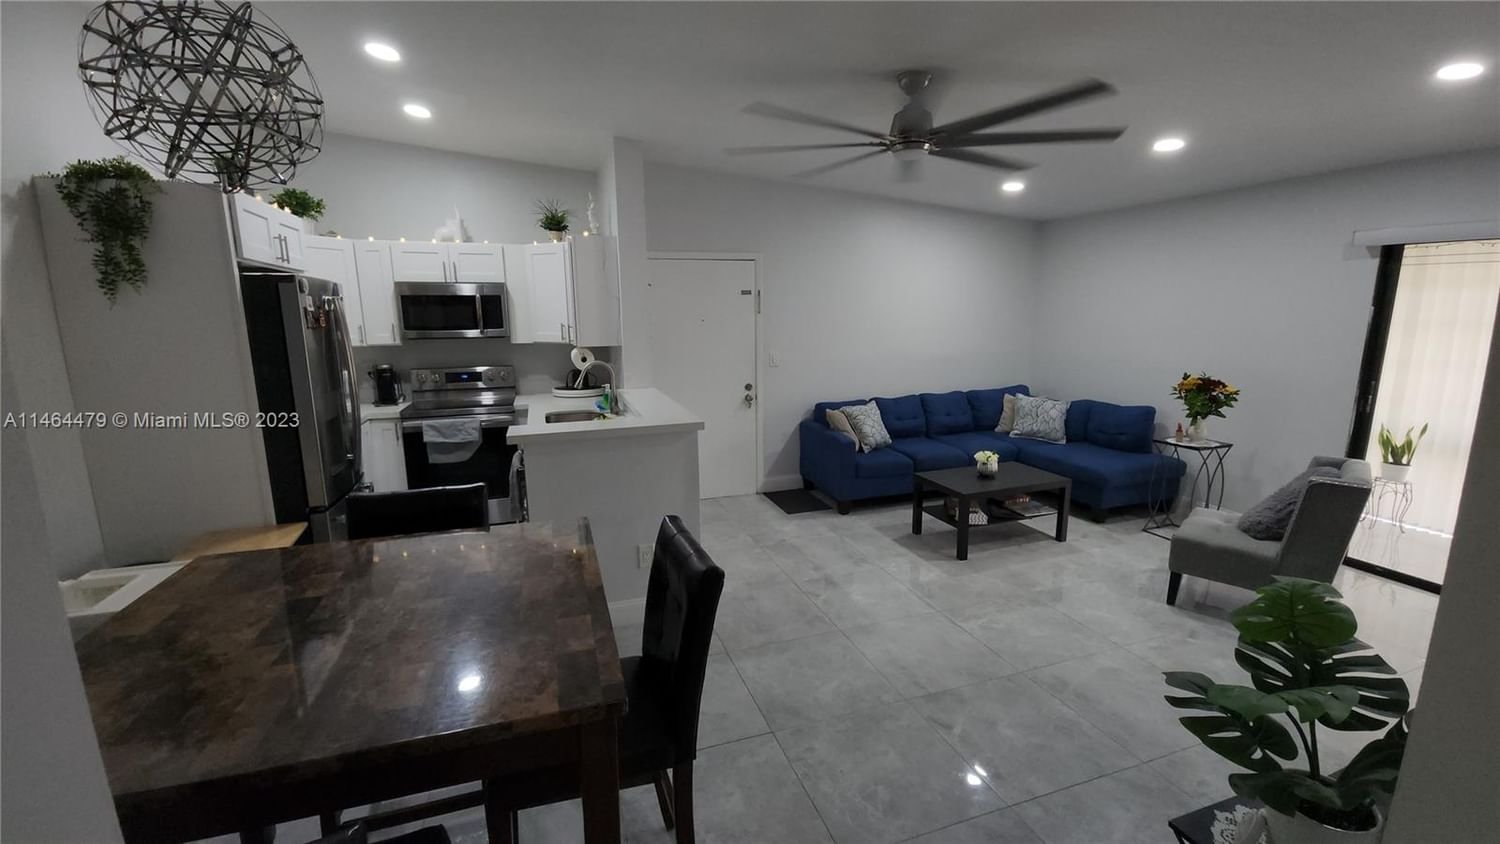 Real estate property located at 9721 Hammocks Blvd #201, Miami-Dade County, Miami, FL